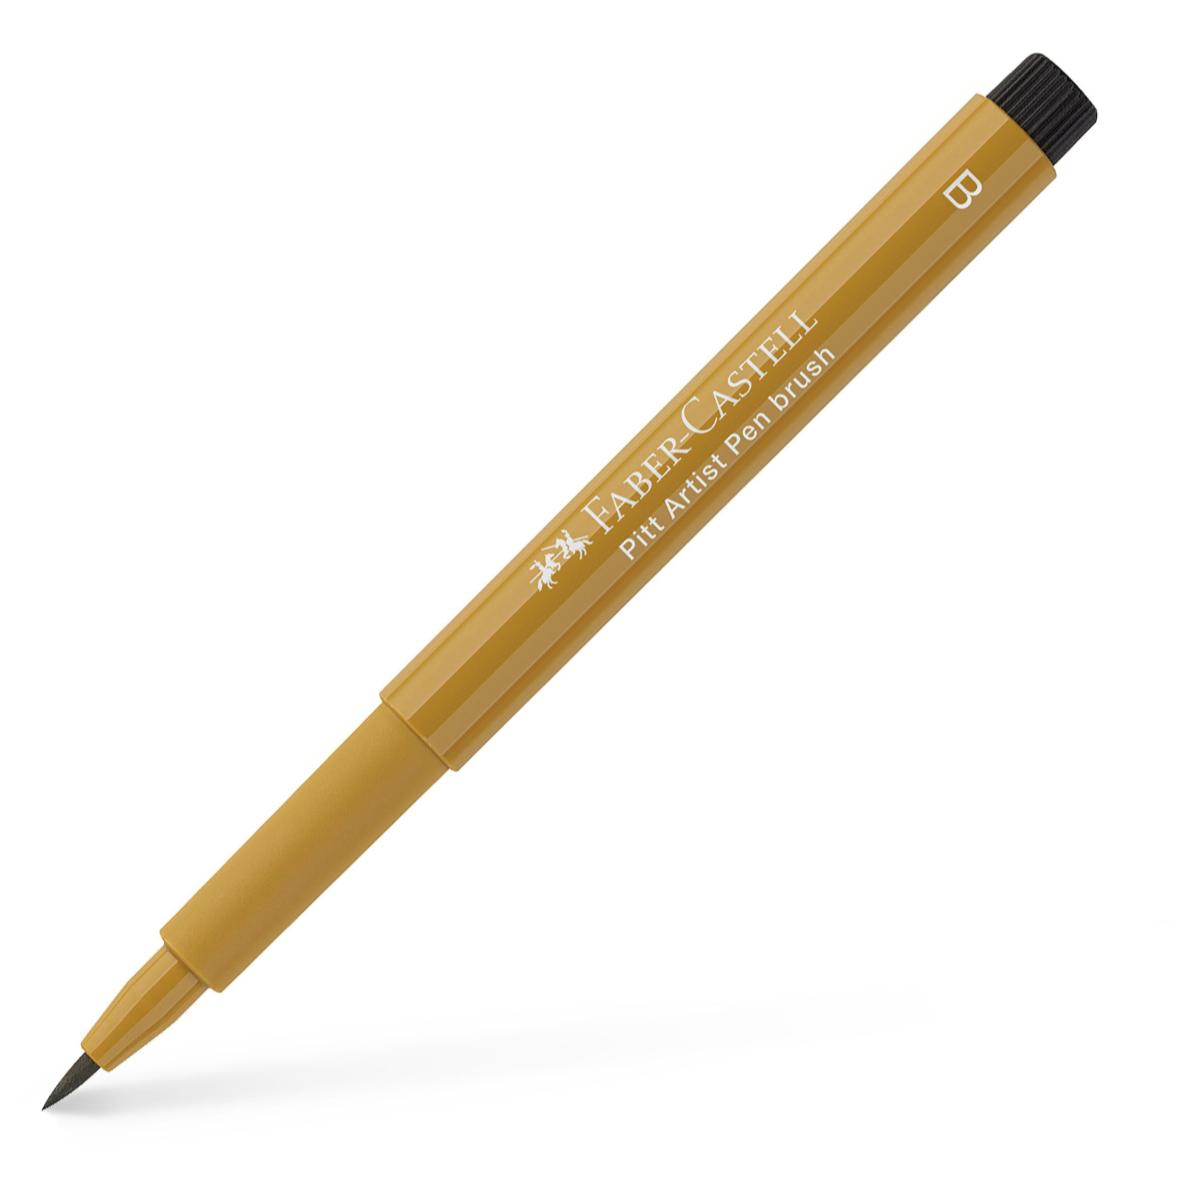 Faber-Castell : Pitt : Artists Brush Pen : Green Gold